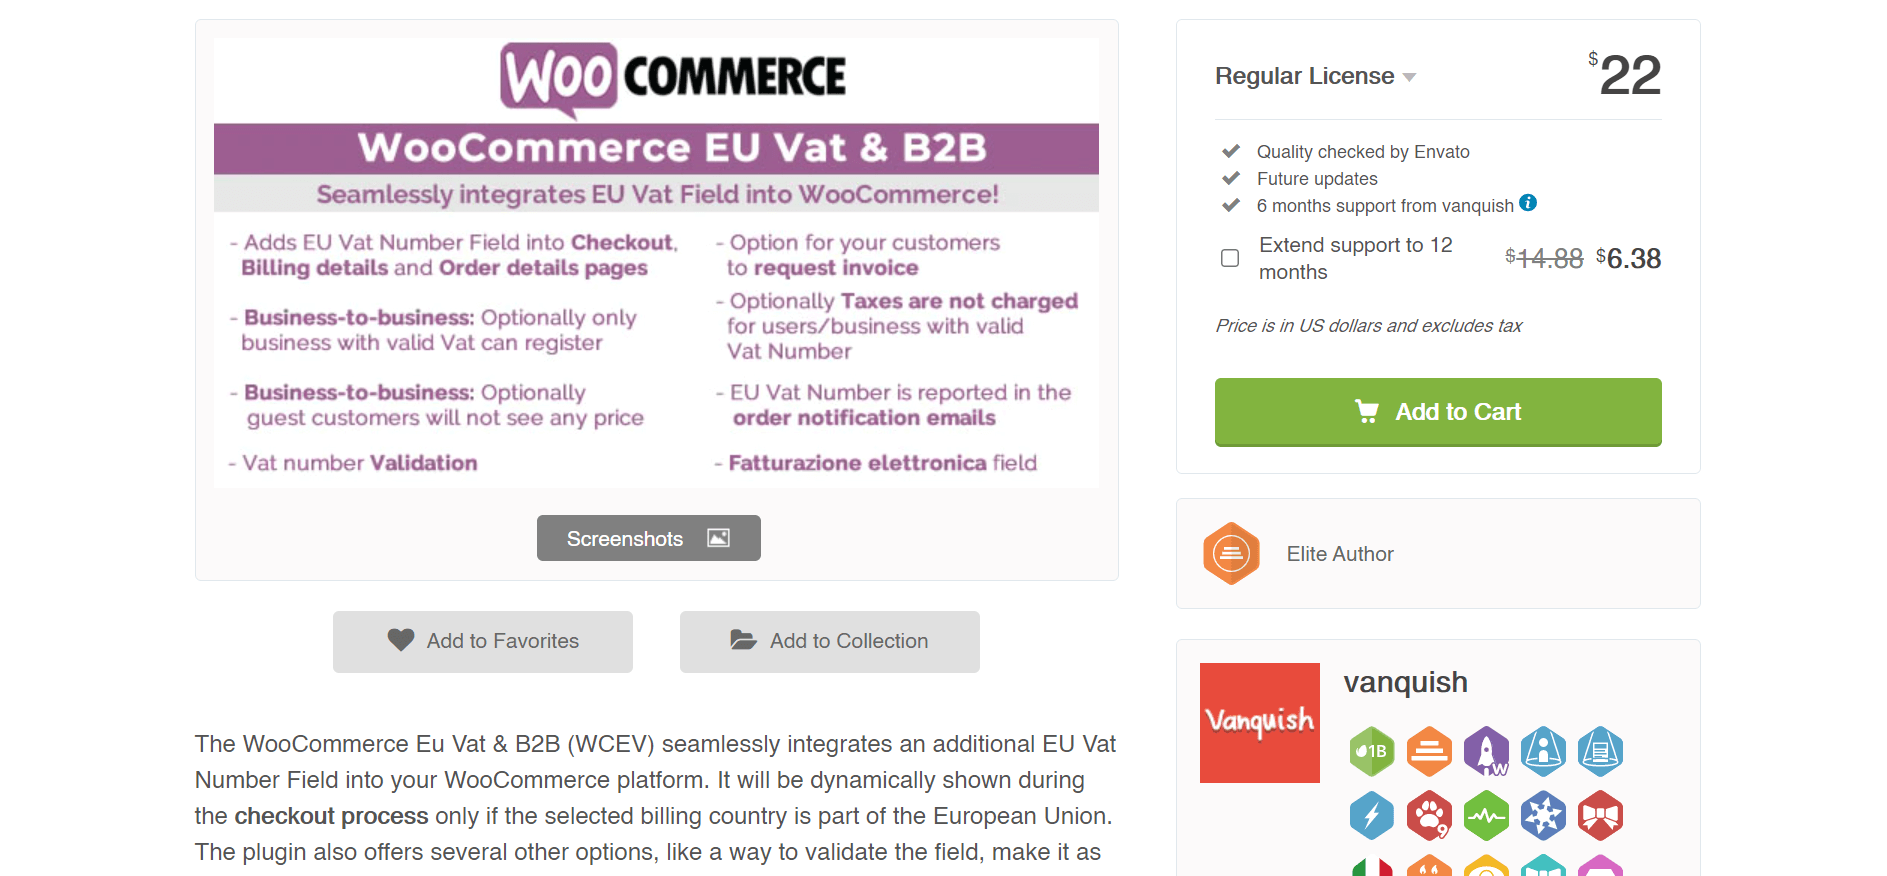 woocommerce eu vat and b2b